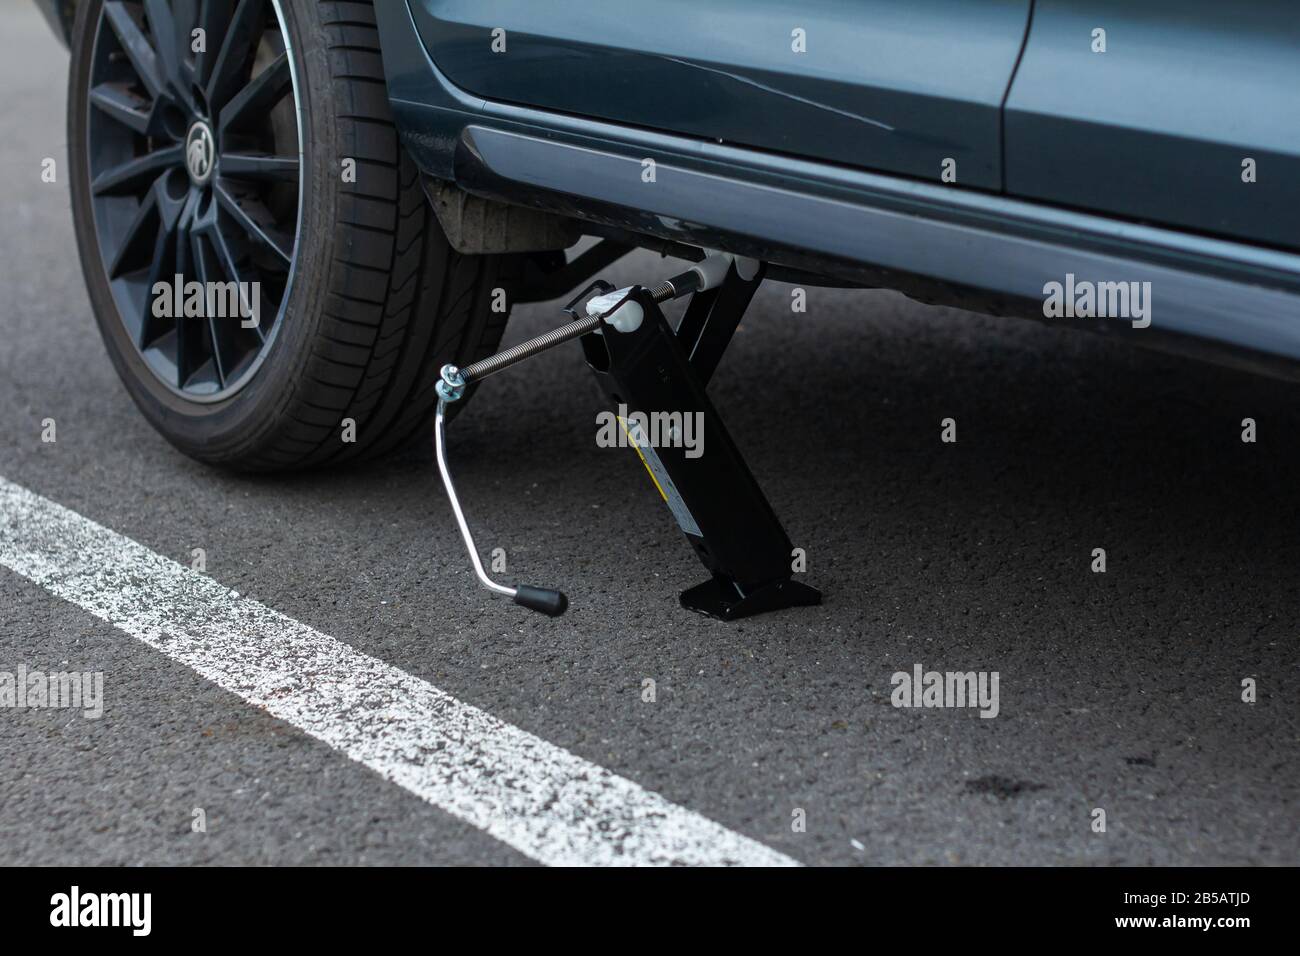 Le cric soulève un véhicule. Service automobile. Concept de remplacement des pneus, Prague, mars 2020. Banque D'Images